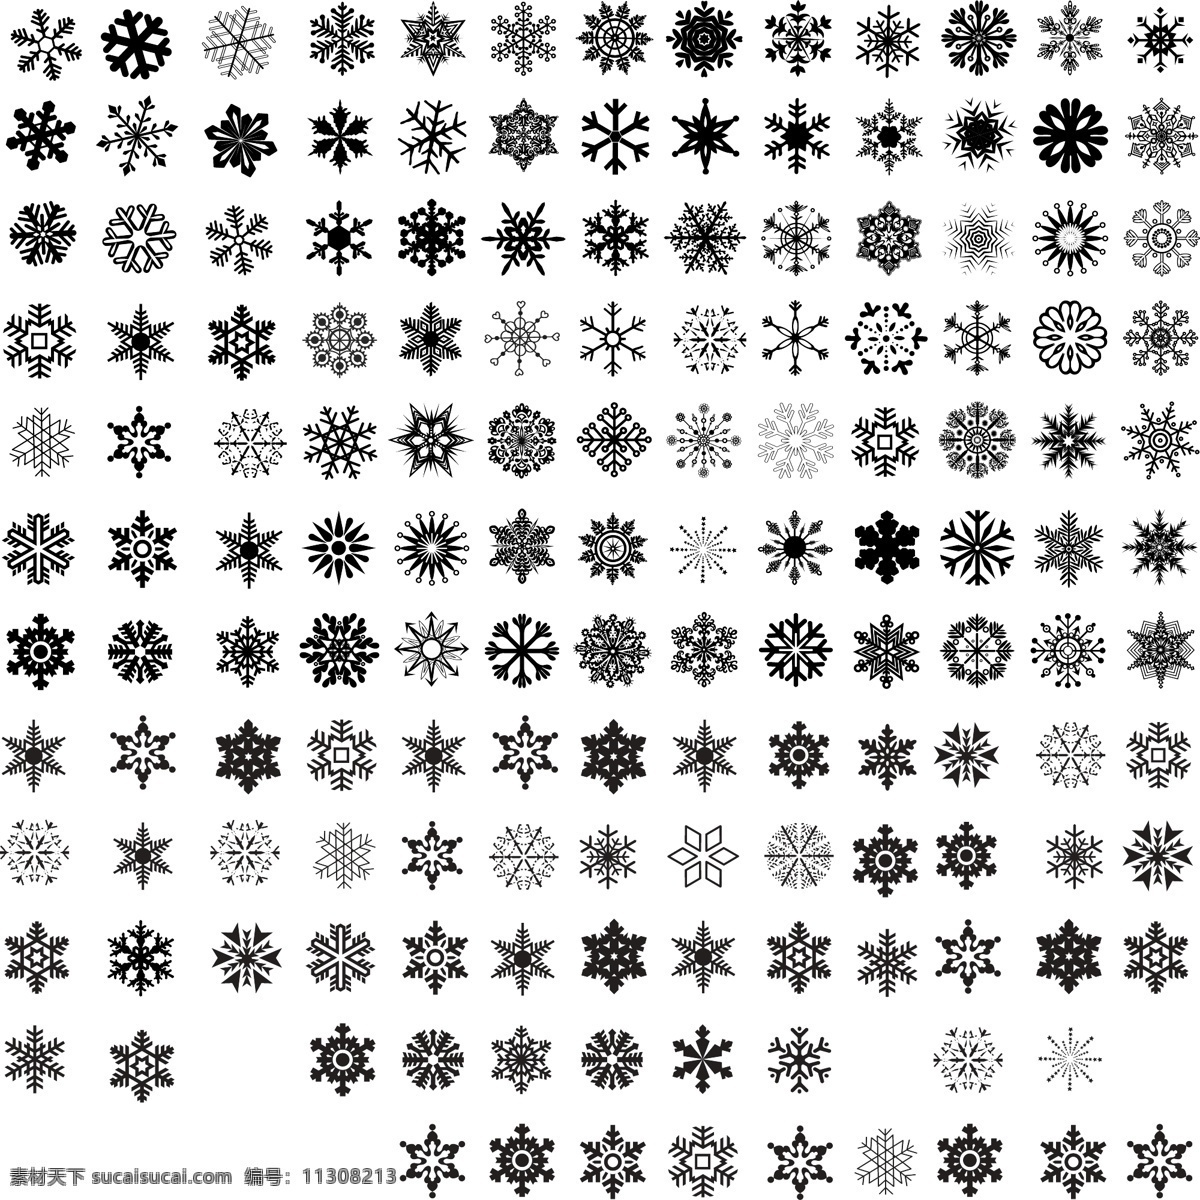 各种 雪花 矢量 平面设计素材 印刷素材 星星 矢量图 星星矢量图 抽象 花型